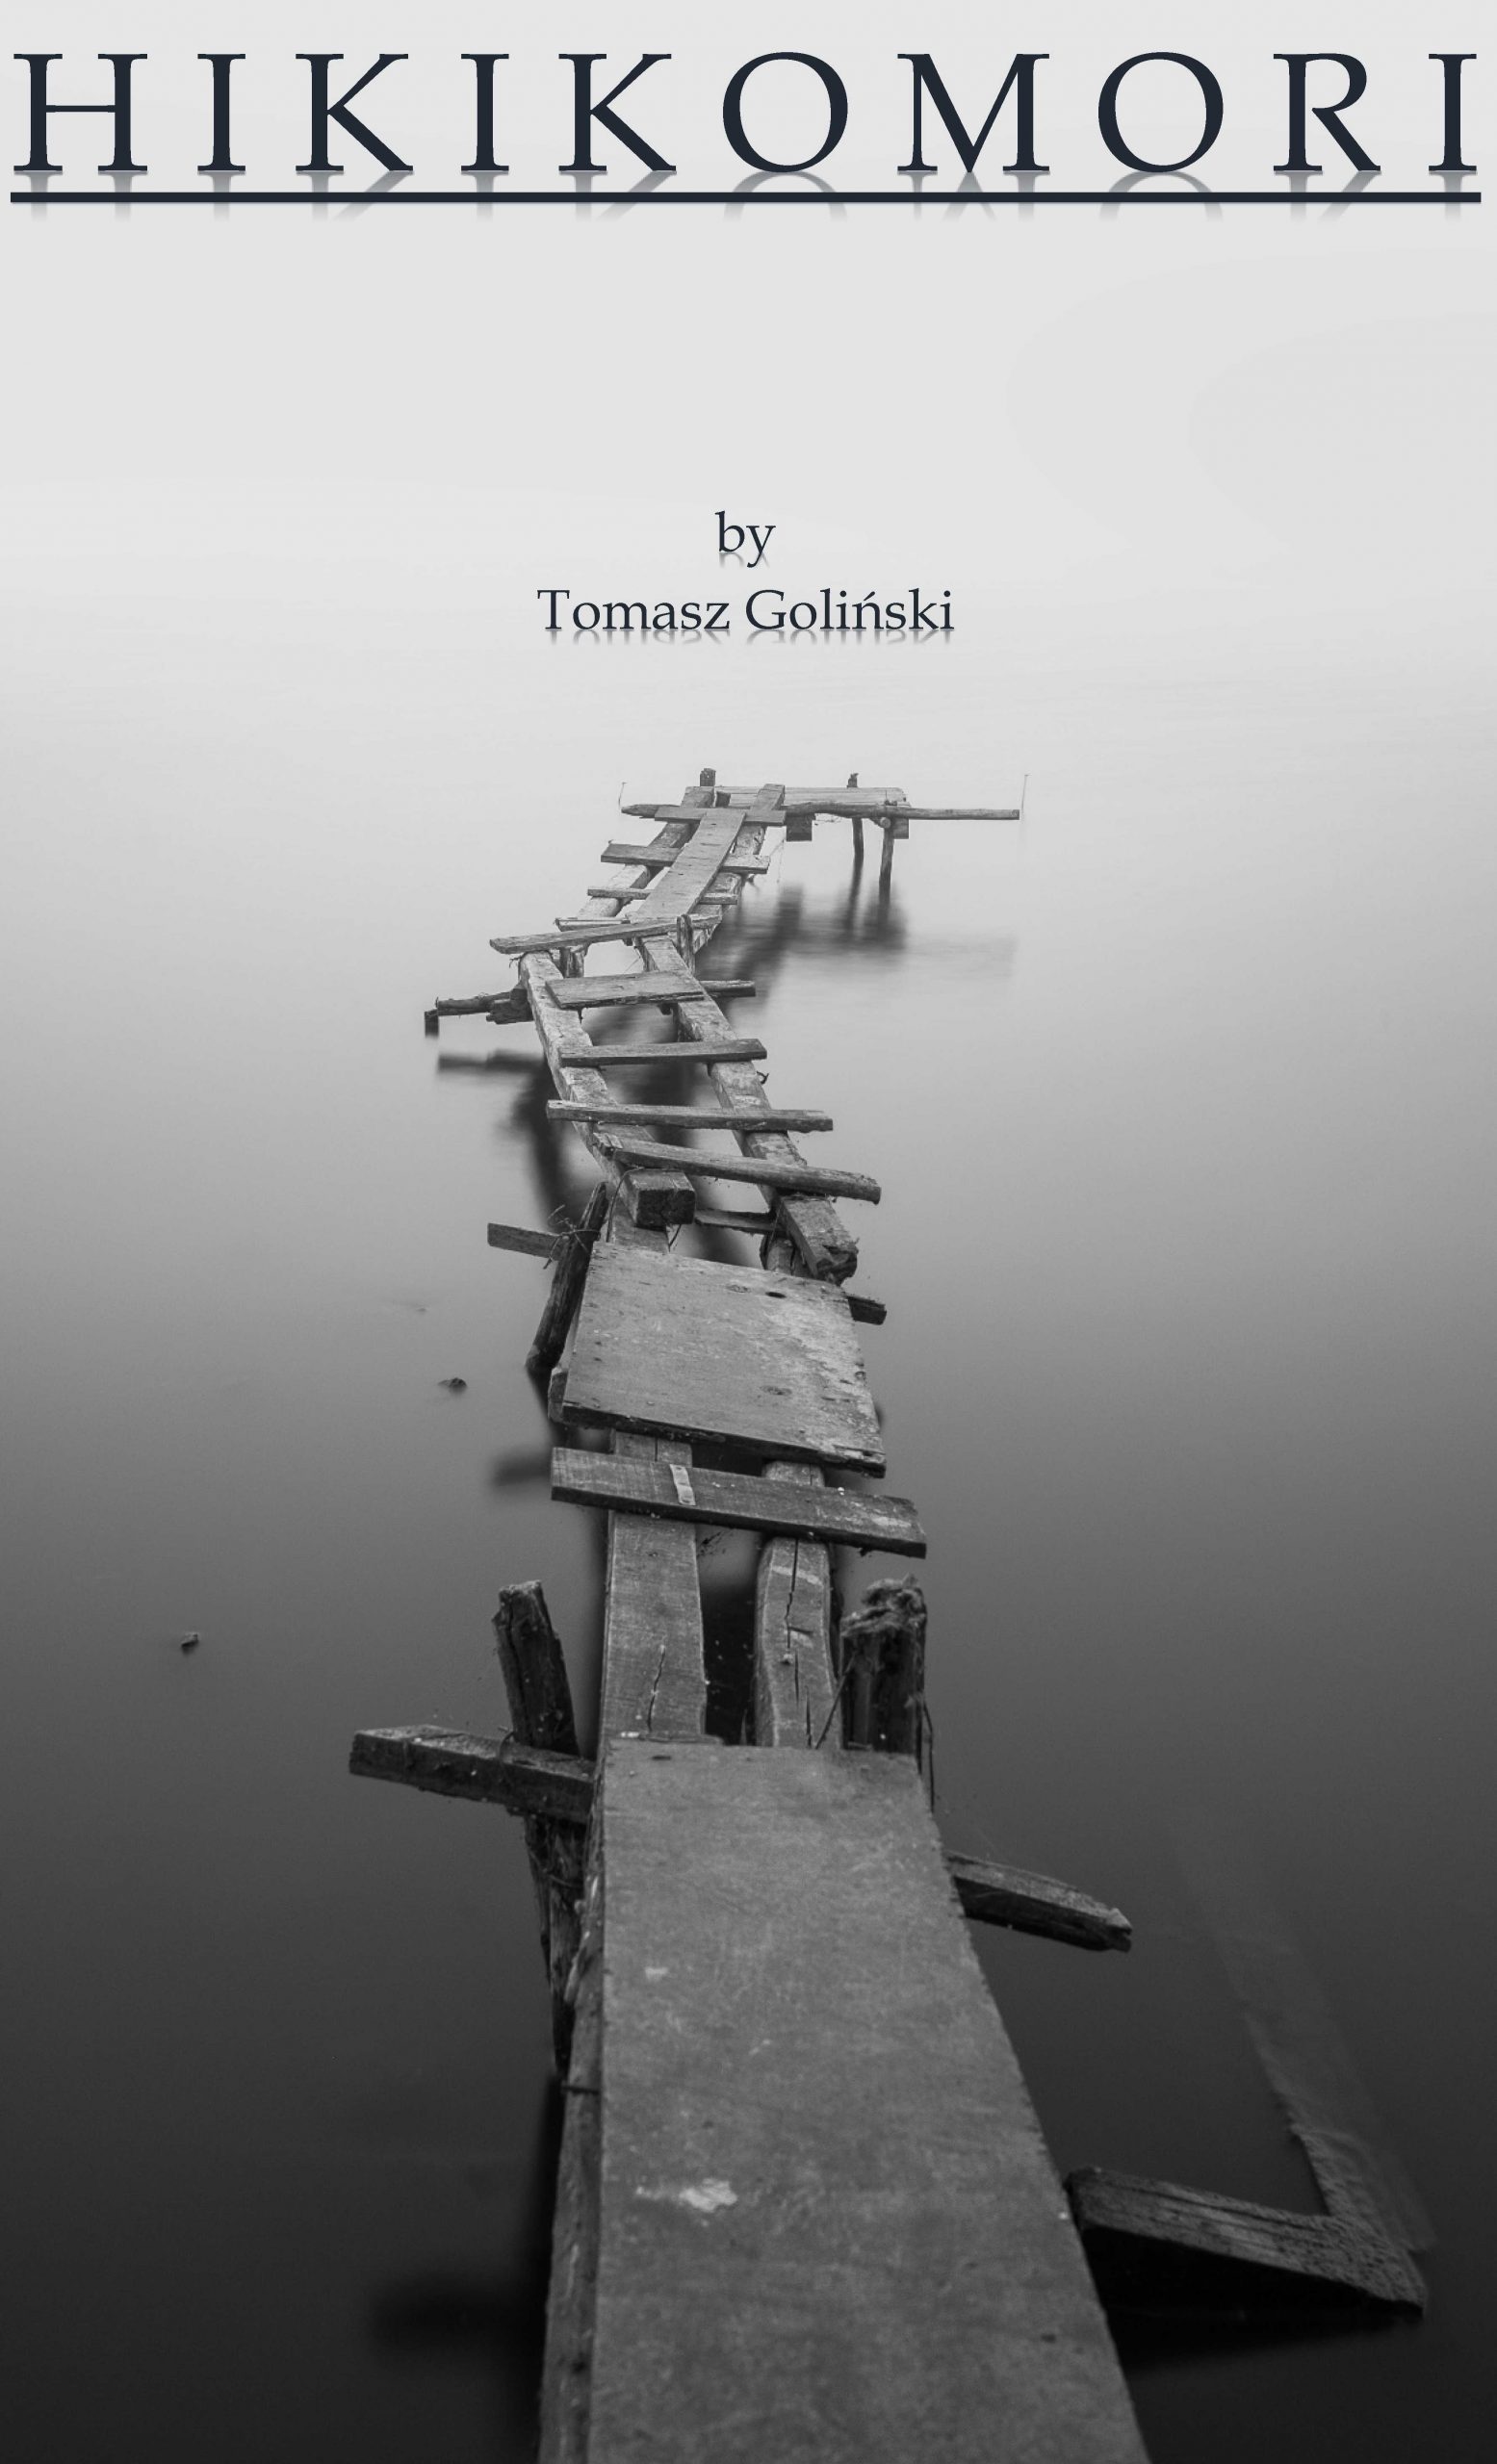 Hikikomori by Tomasz Golinski